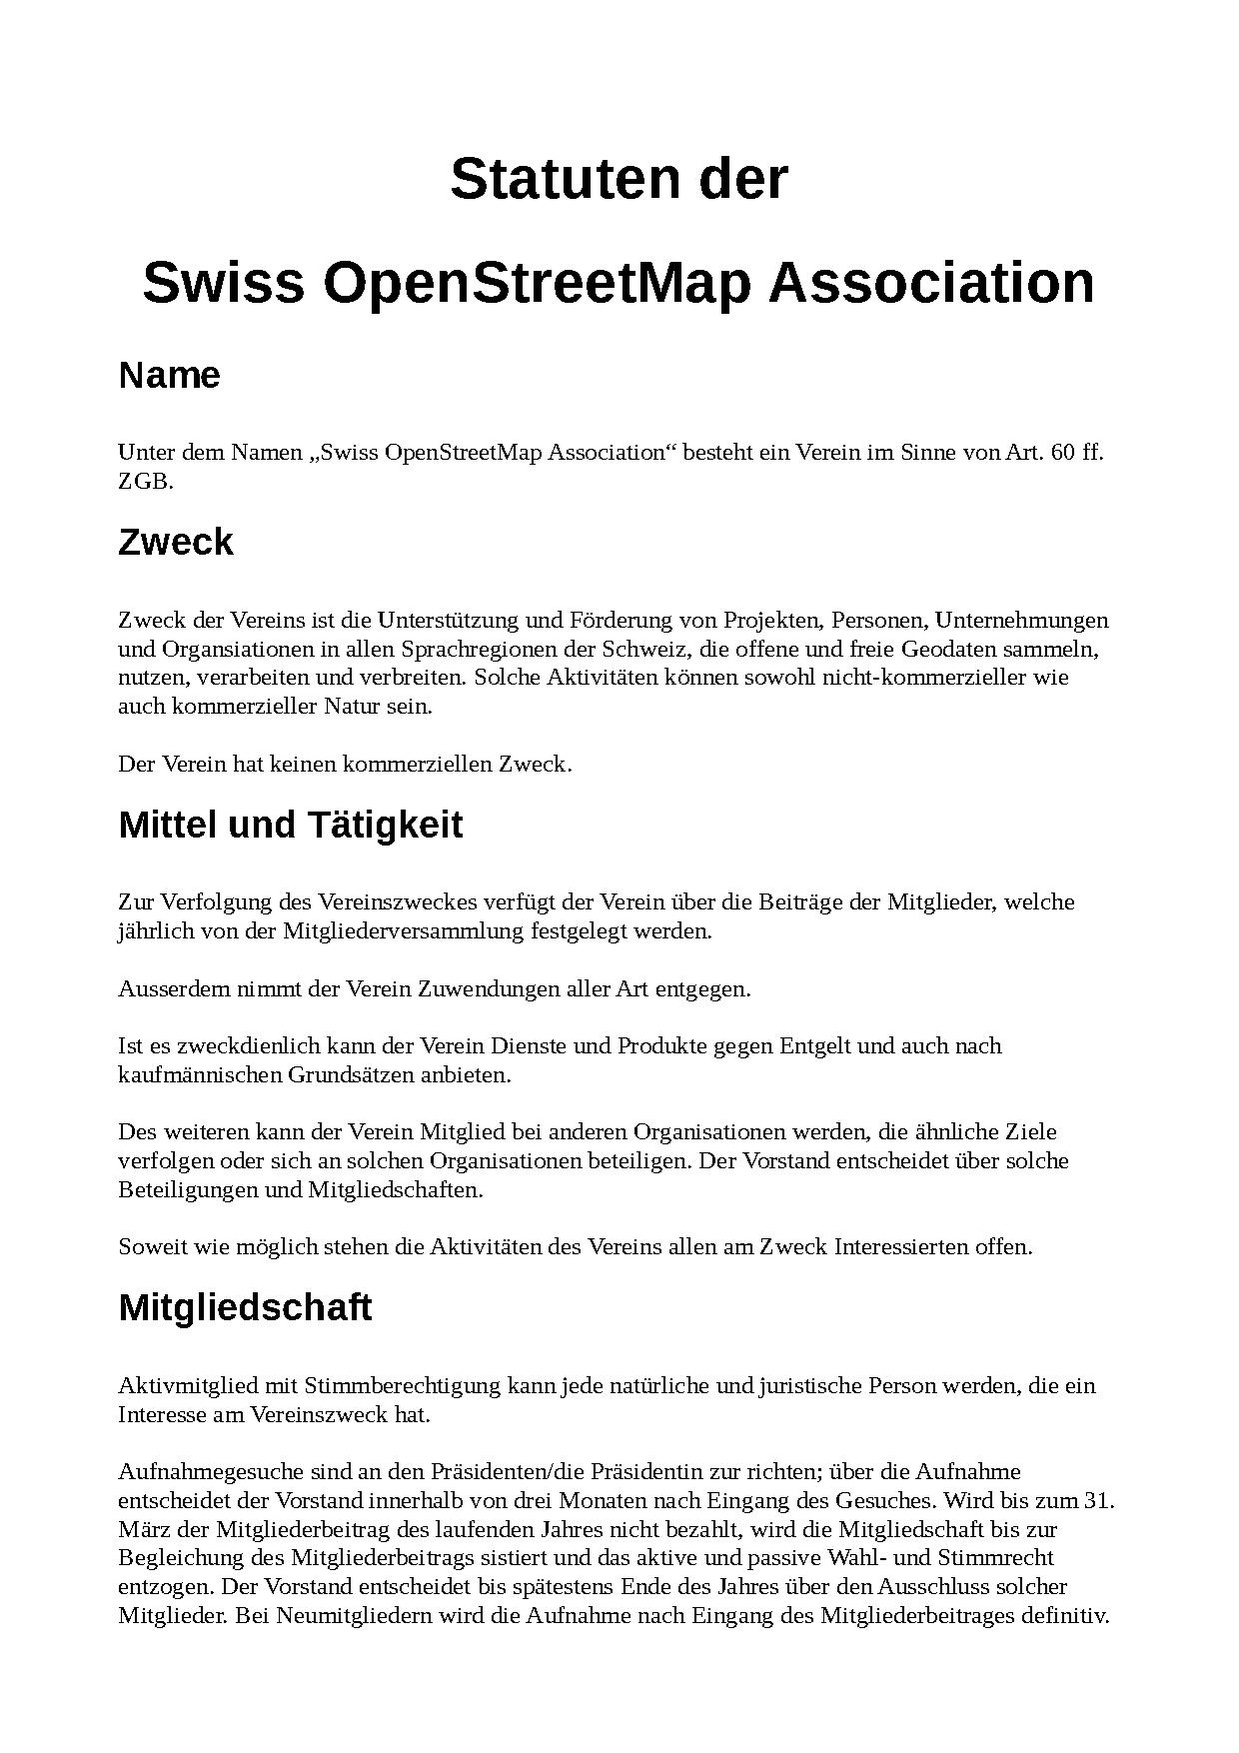 Swiss Statuten-de.pdf